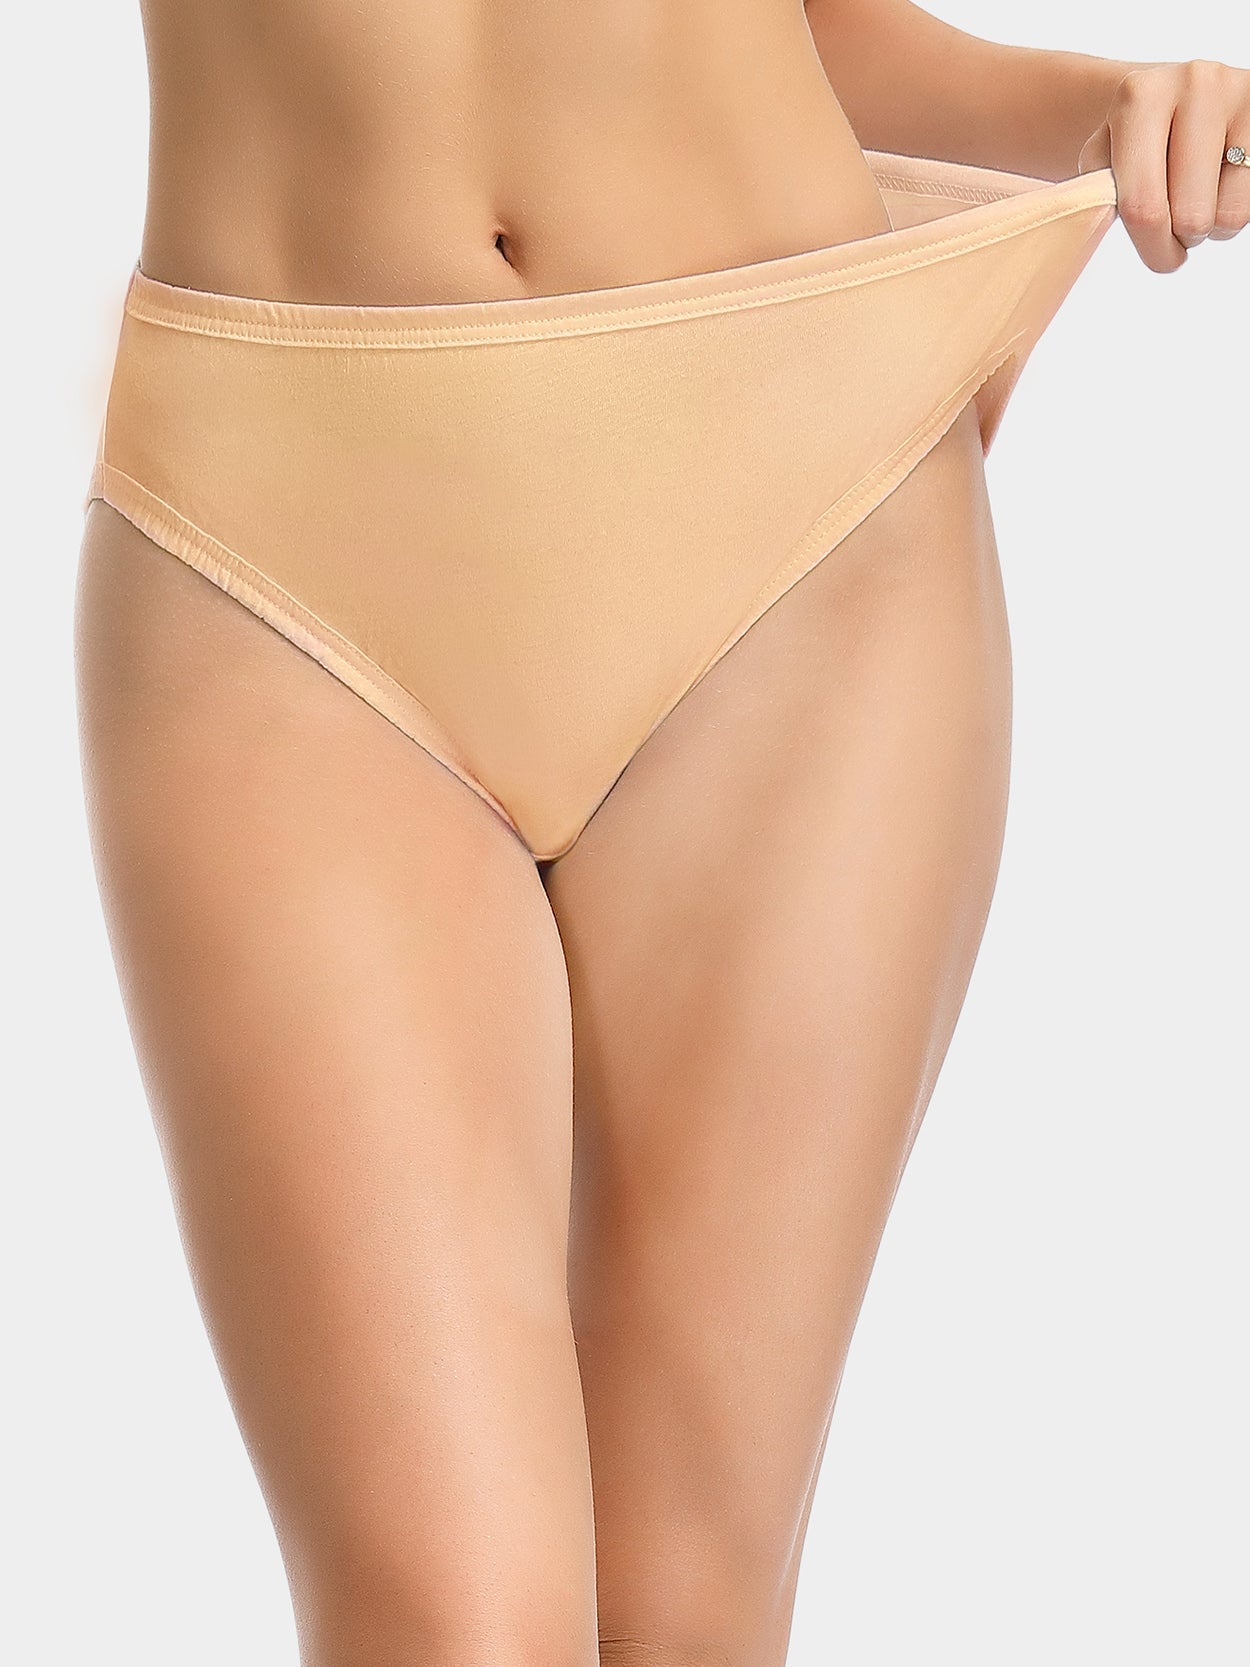 3Pcs Women's Cotton Panties Plus Size Underwear Breathable Sexy